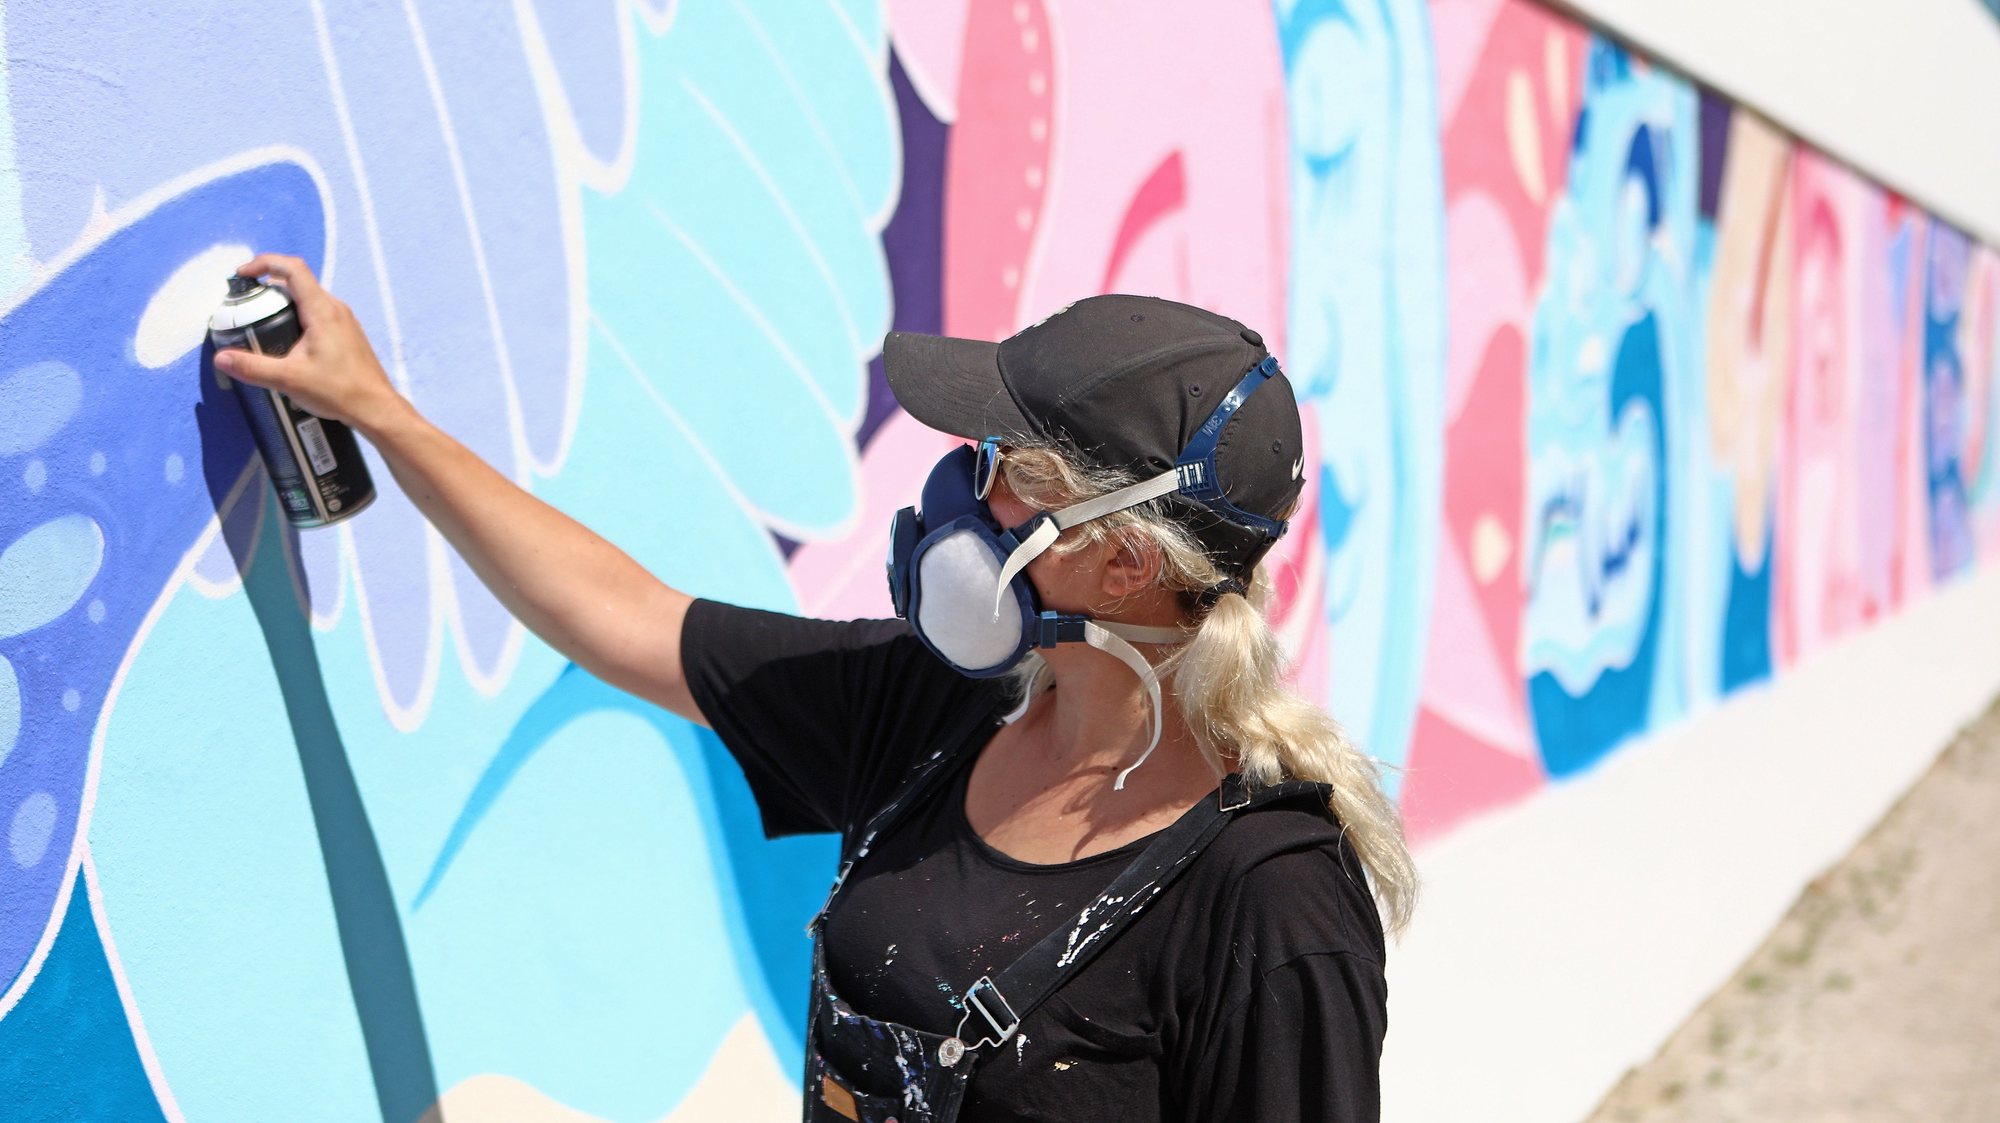 A artista plástica mexicana, Sofia Castellanos, durante a pintura de mural nas paredes do Estádio do Casa Pia Atlético Clube, em Lisboa, 15 de julho de 2021. (ACOMPANHA TEXTO DE 18 DE JULHO DE 2021). ANTÓNIO PEDRO SANTOS/LUSA